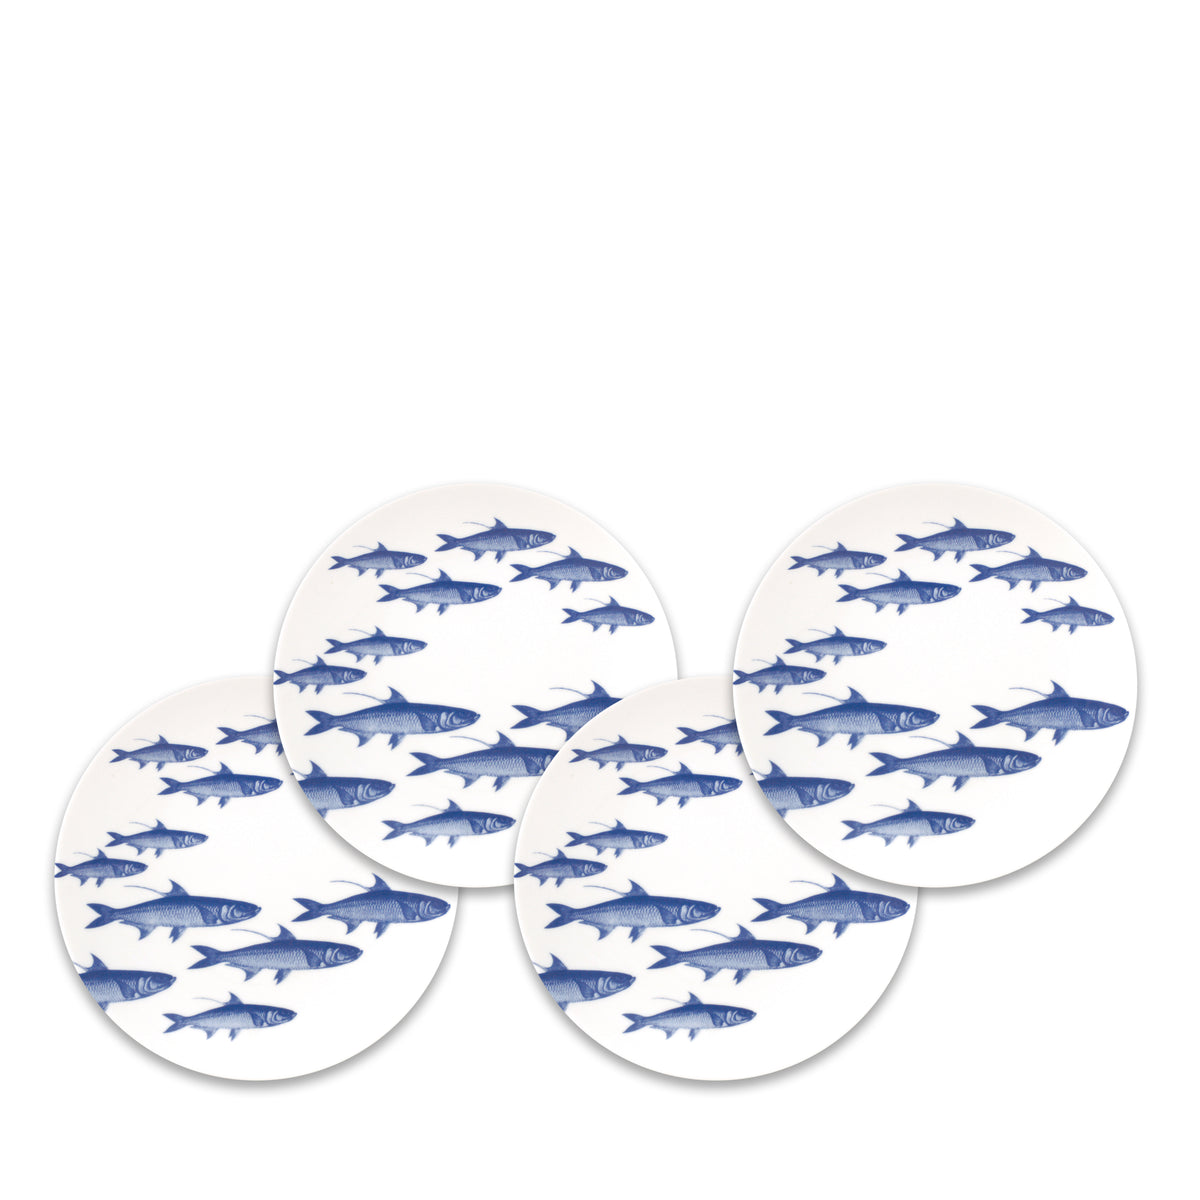 School of Fish Canapé Plates Boxed Set/4 - Caskata